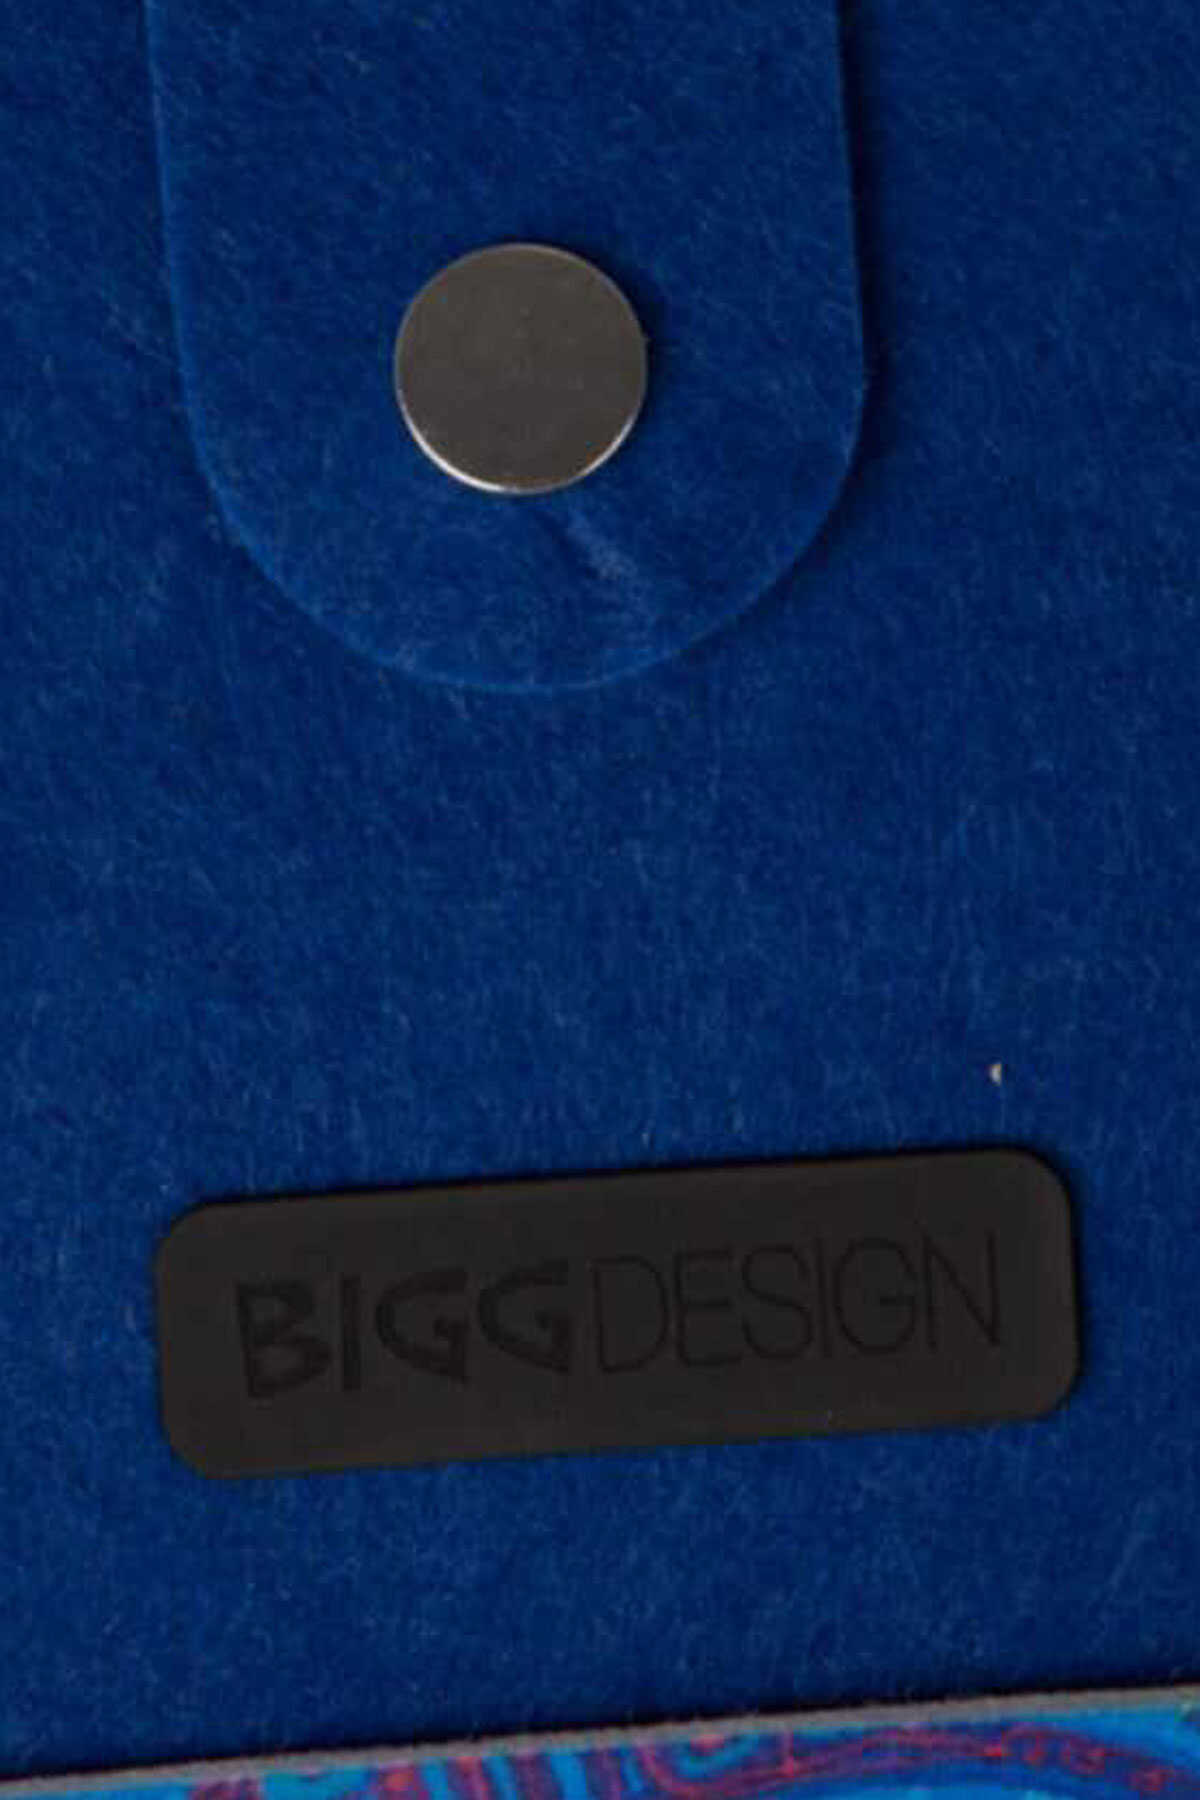 کیف نمدی دوشی طرح دار آویز دار زنانه آبی کاربنی برند Biggdesign 